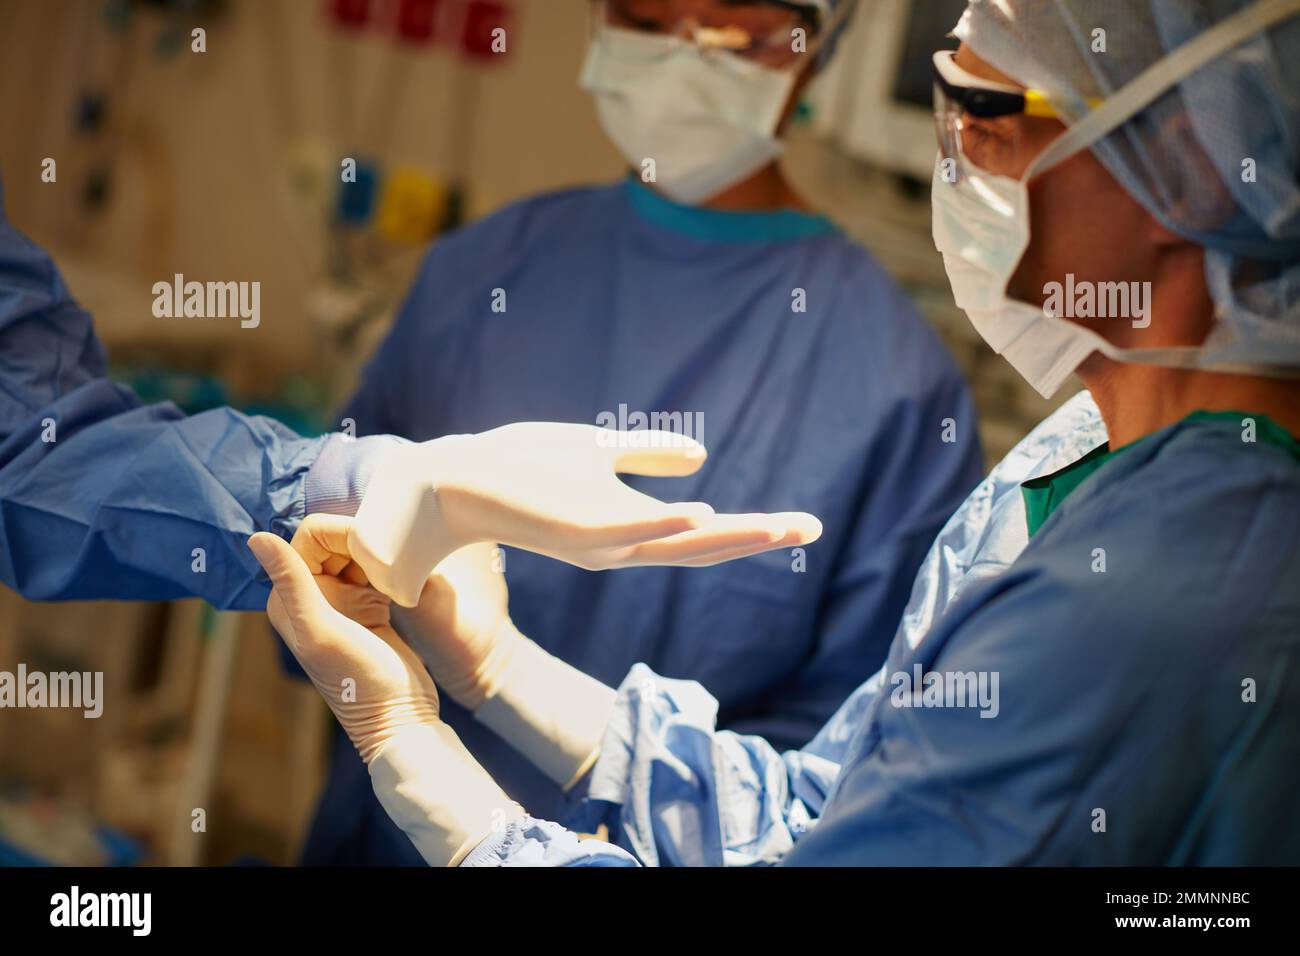 Einander bei der Operationsvorbereitung eine helfende Hand zu geben. Chirurgen, die Operationshandschuhe zur Vorbereitung auf eine Operation anziehen. Stockfoto